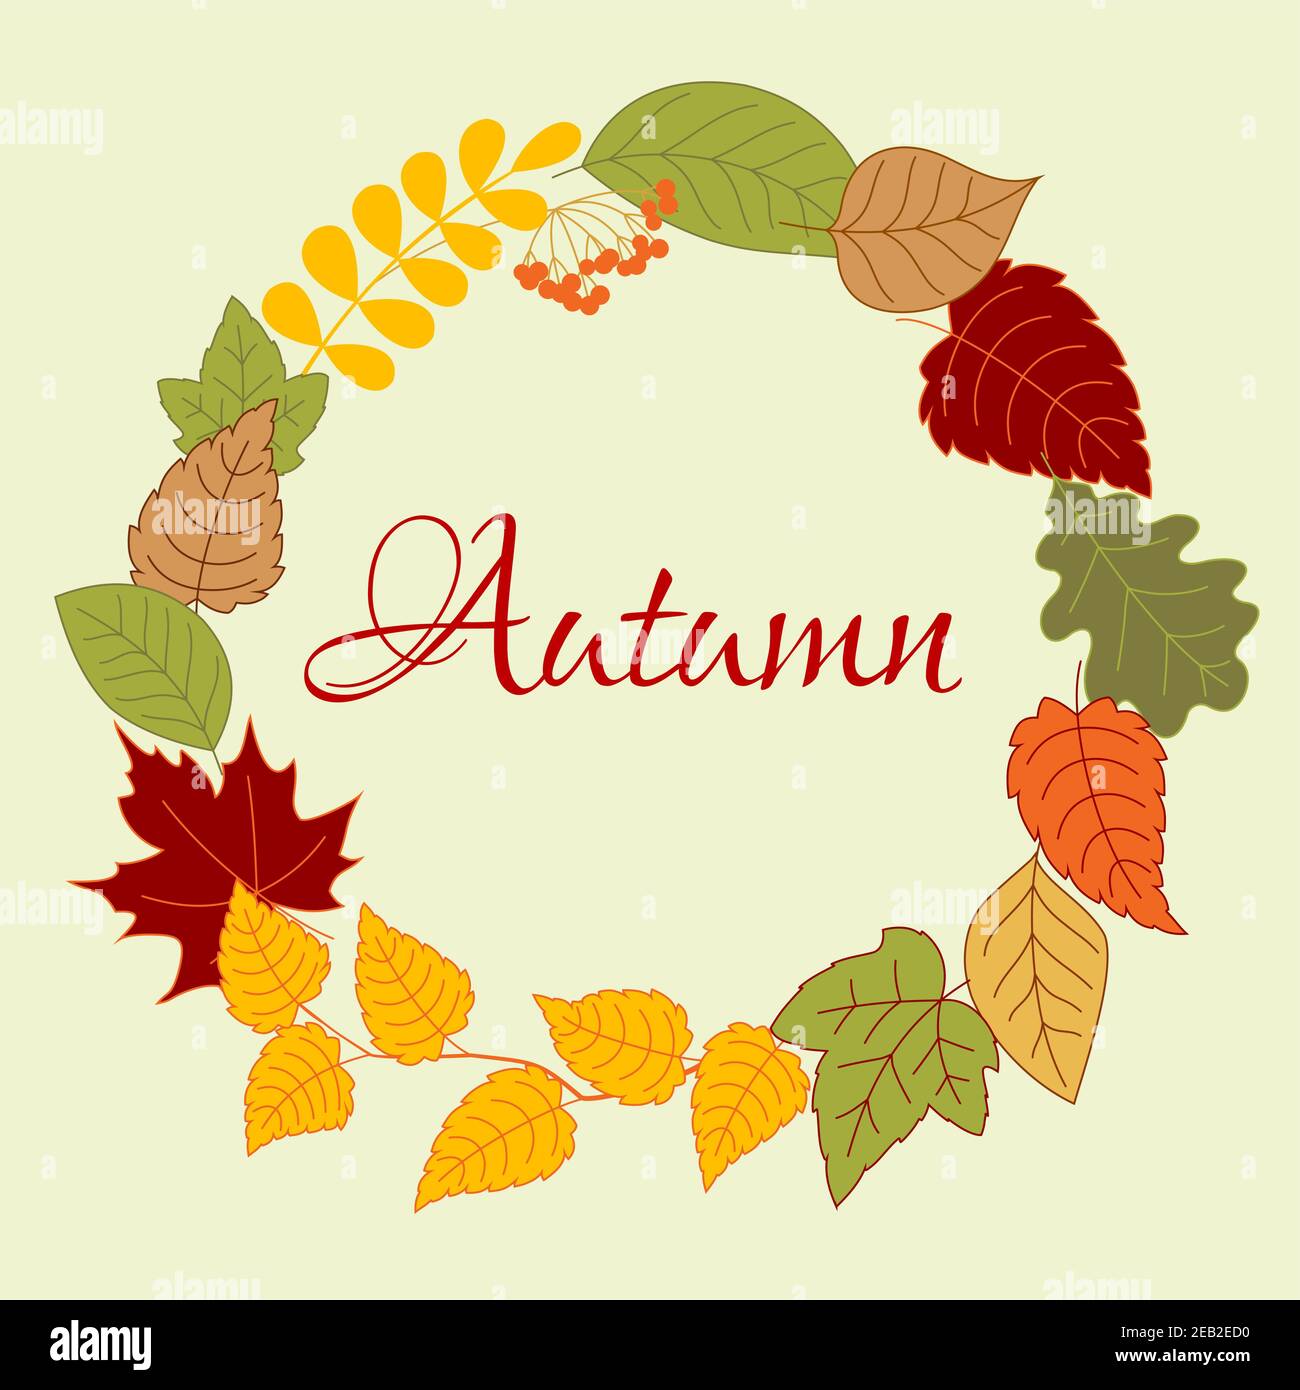 Cadre de couronne de feuilles d'automne disposés sur une bordure ronde avec des feuilles colorées, des branches de bouleau et d'acacia et un bouquet de fruits rowan Illustration de Vecteur